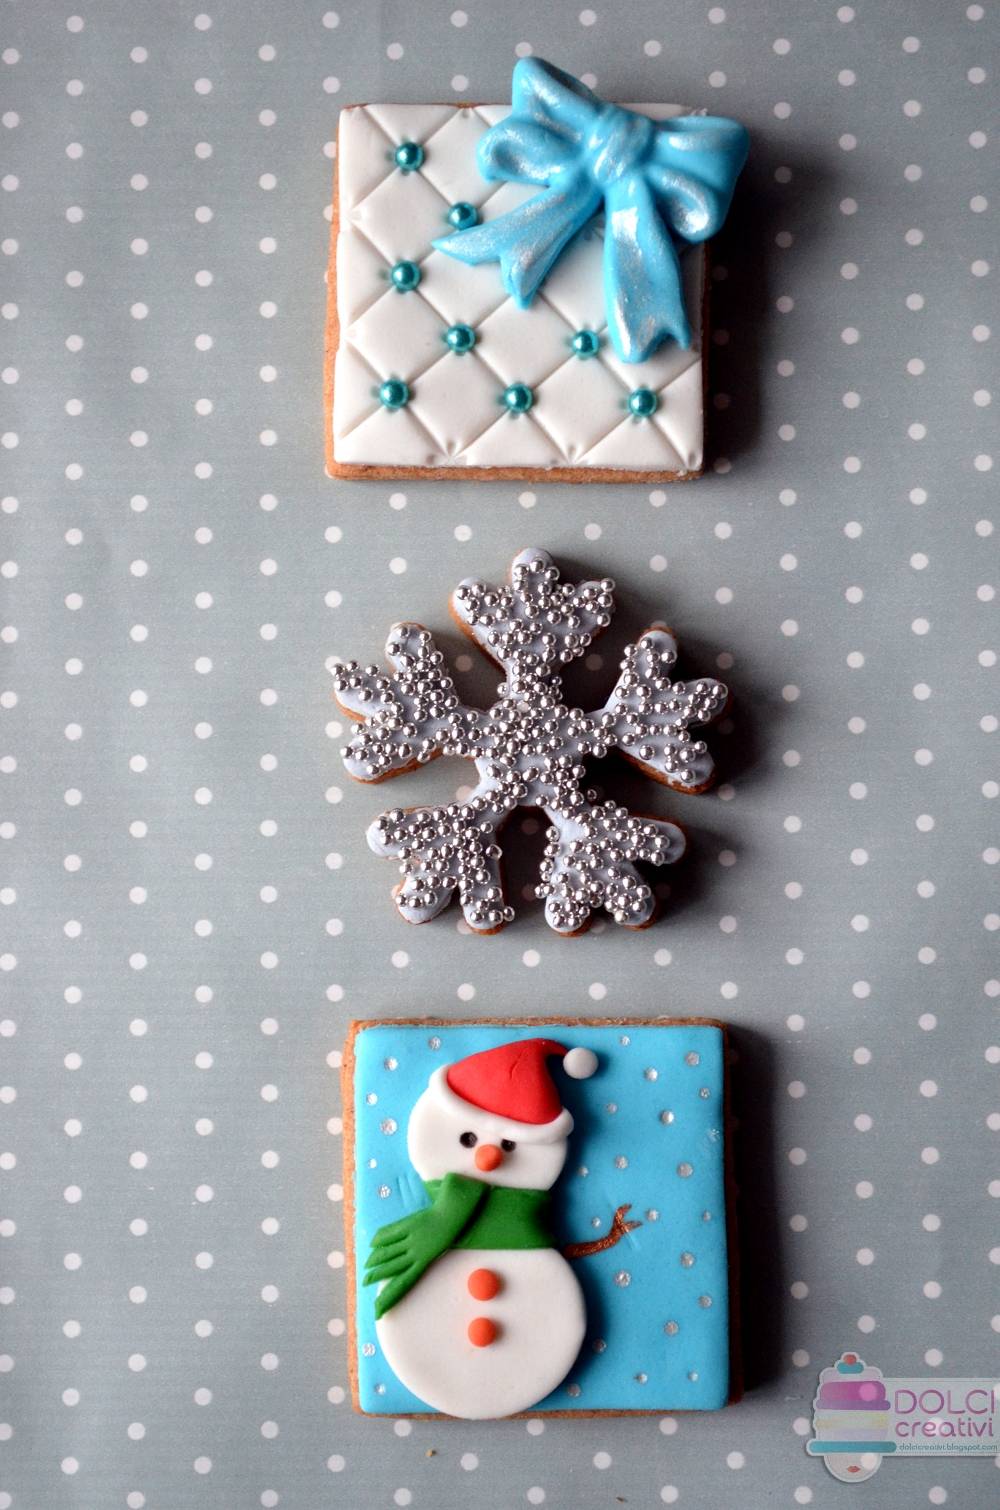 Stella Di Natale Pasta Di Zucchero Tutorial.Biscotti Di Natale Decorati In Pasta Di Zucchero Lamponilla It Torte Cakes Tutorial Foto Food